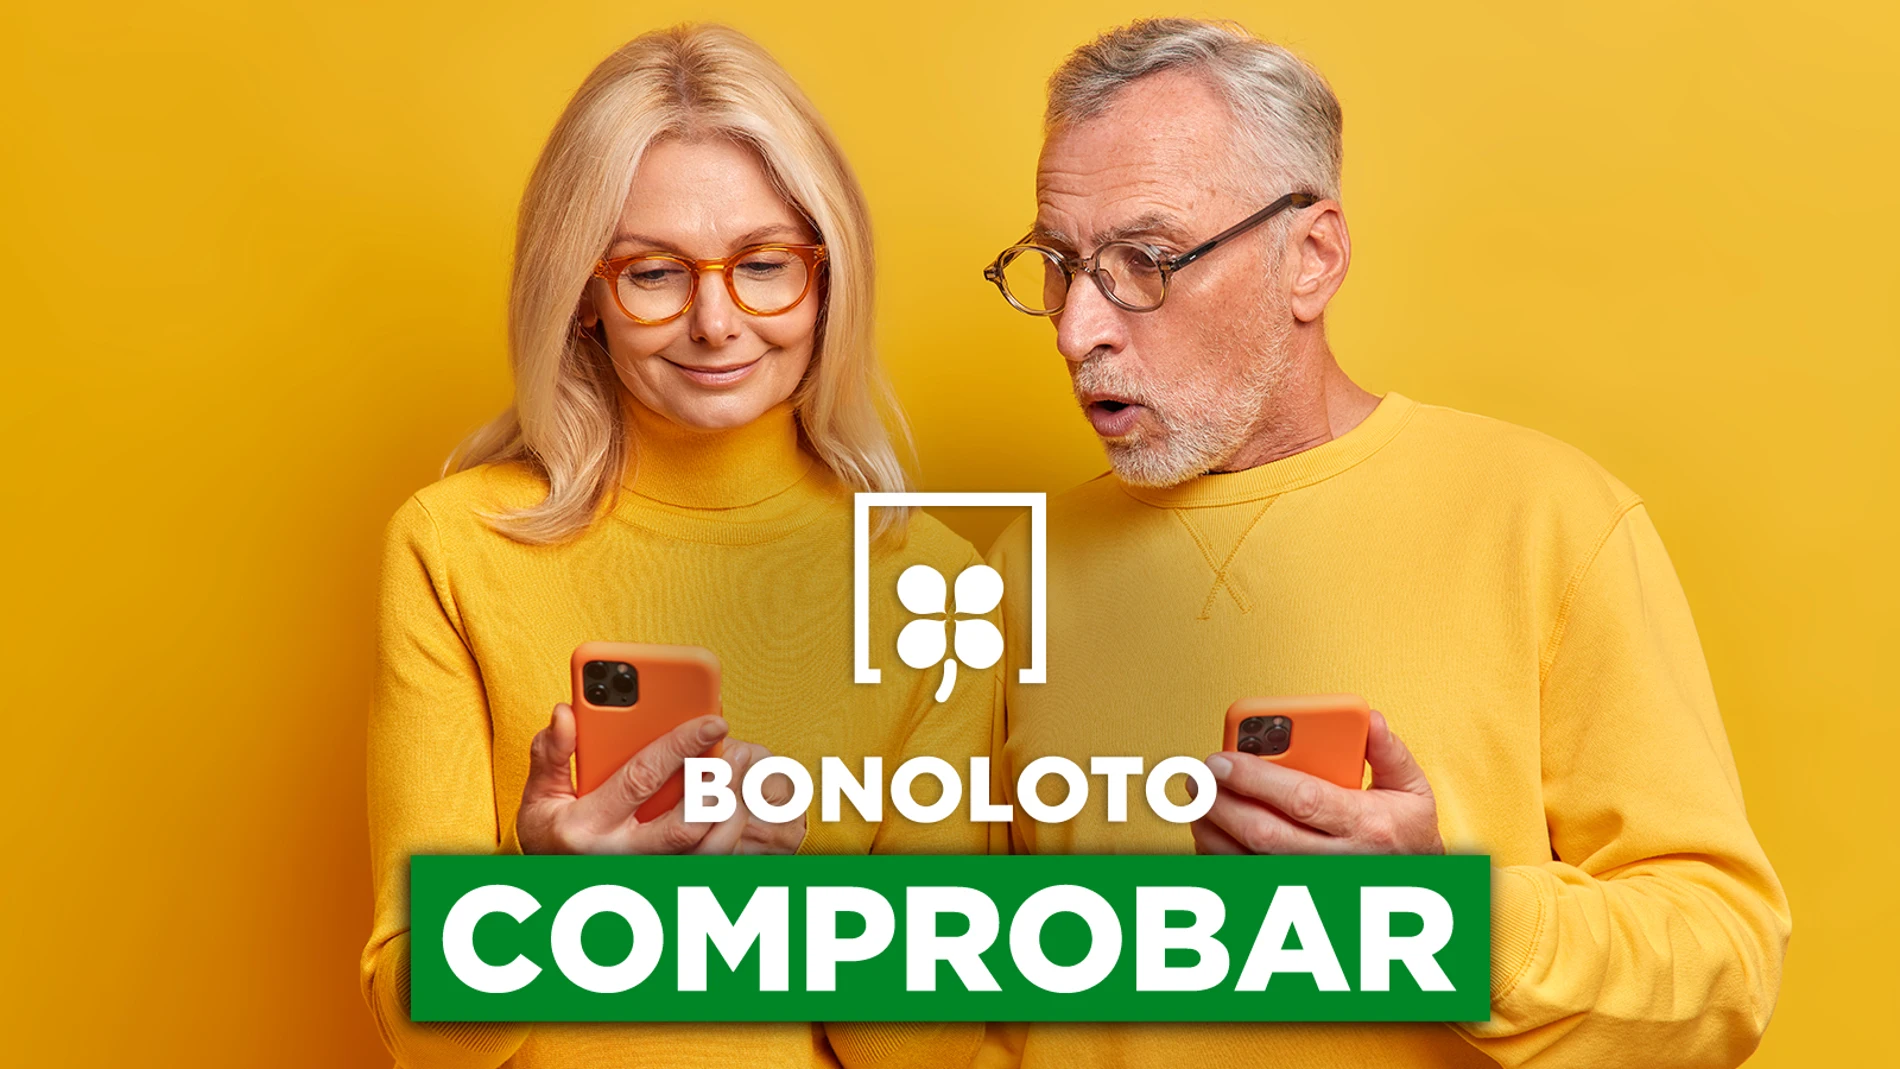 Bonoloto: comprobar hoy, viernes 8 de abril de 2022